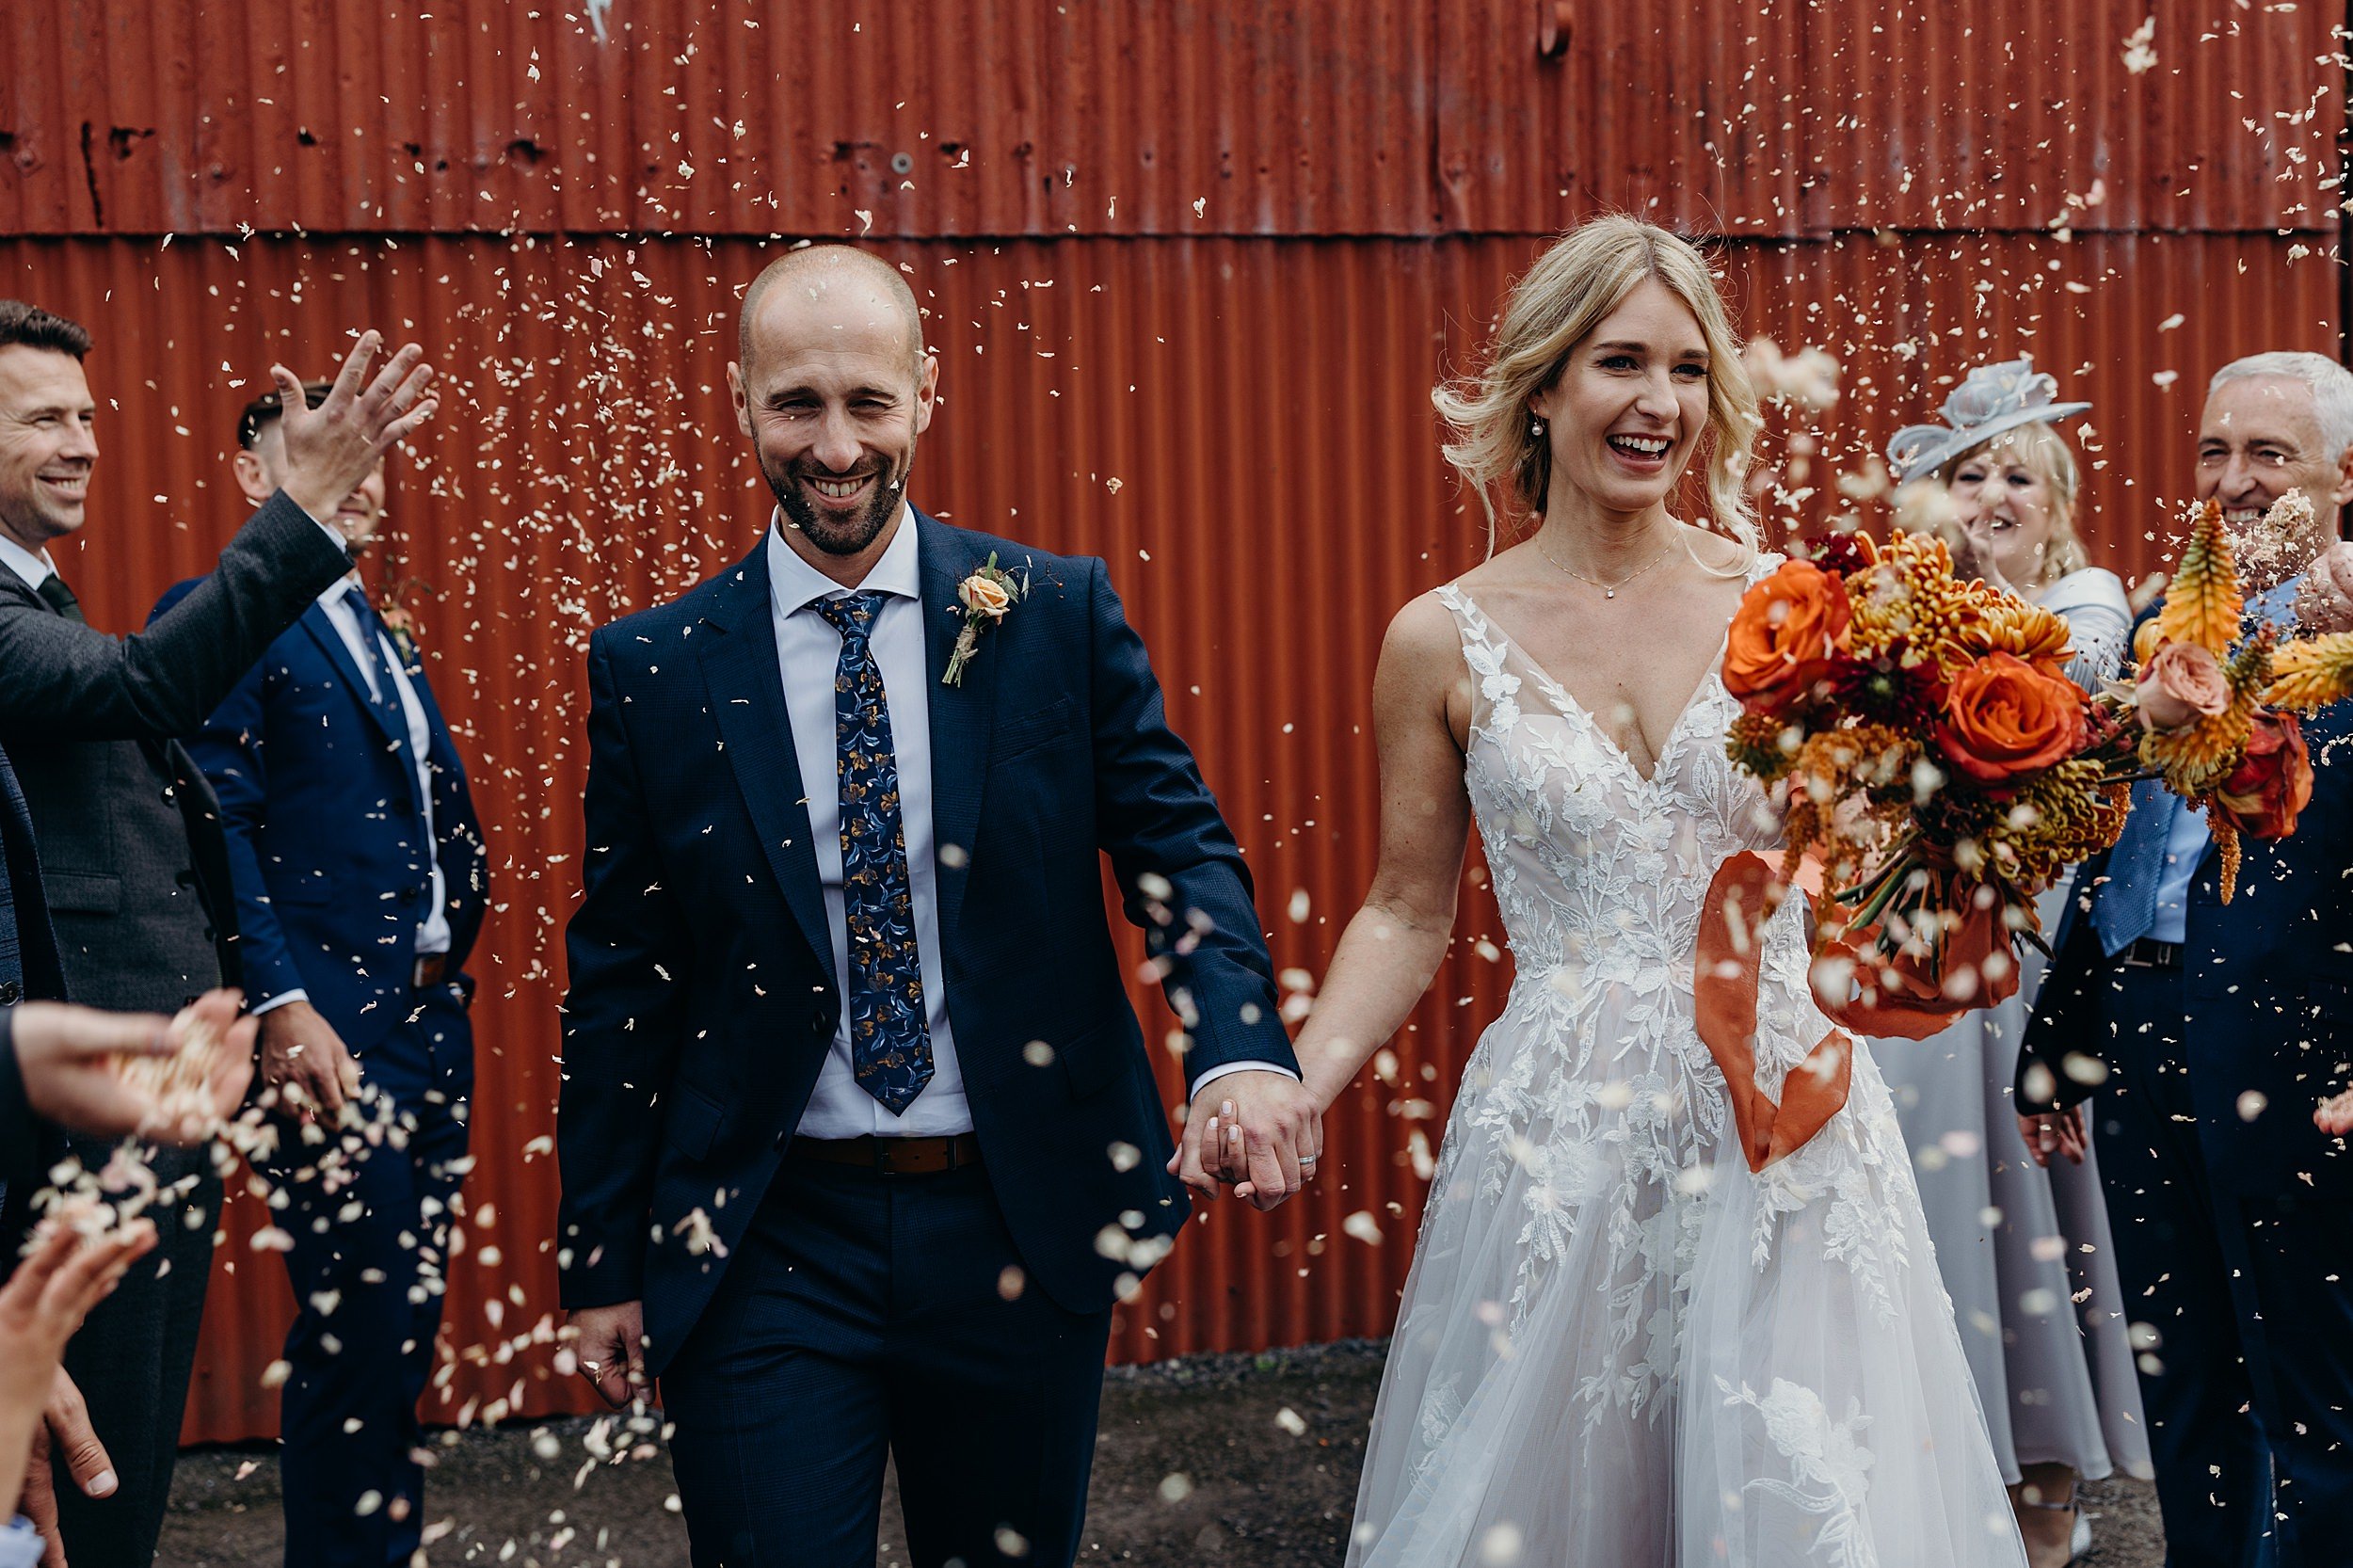 dalduff farm wedding photos showing bride and groom smiling and walking under confetti throw outside dalduff barn